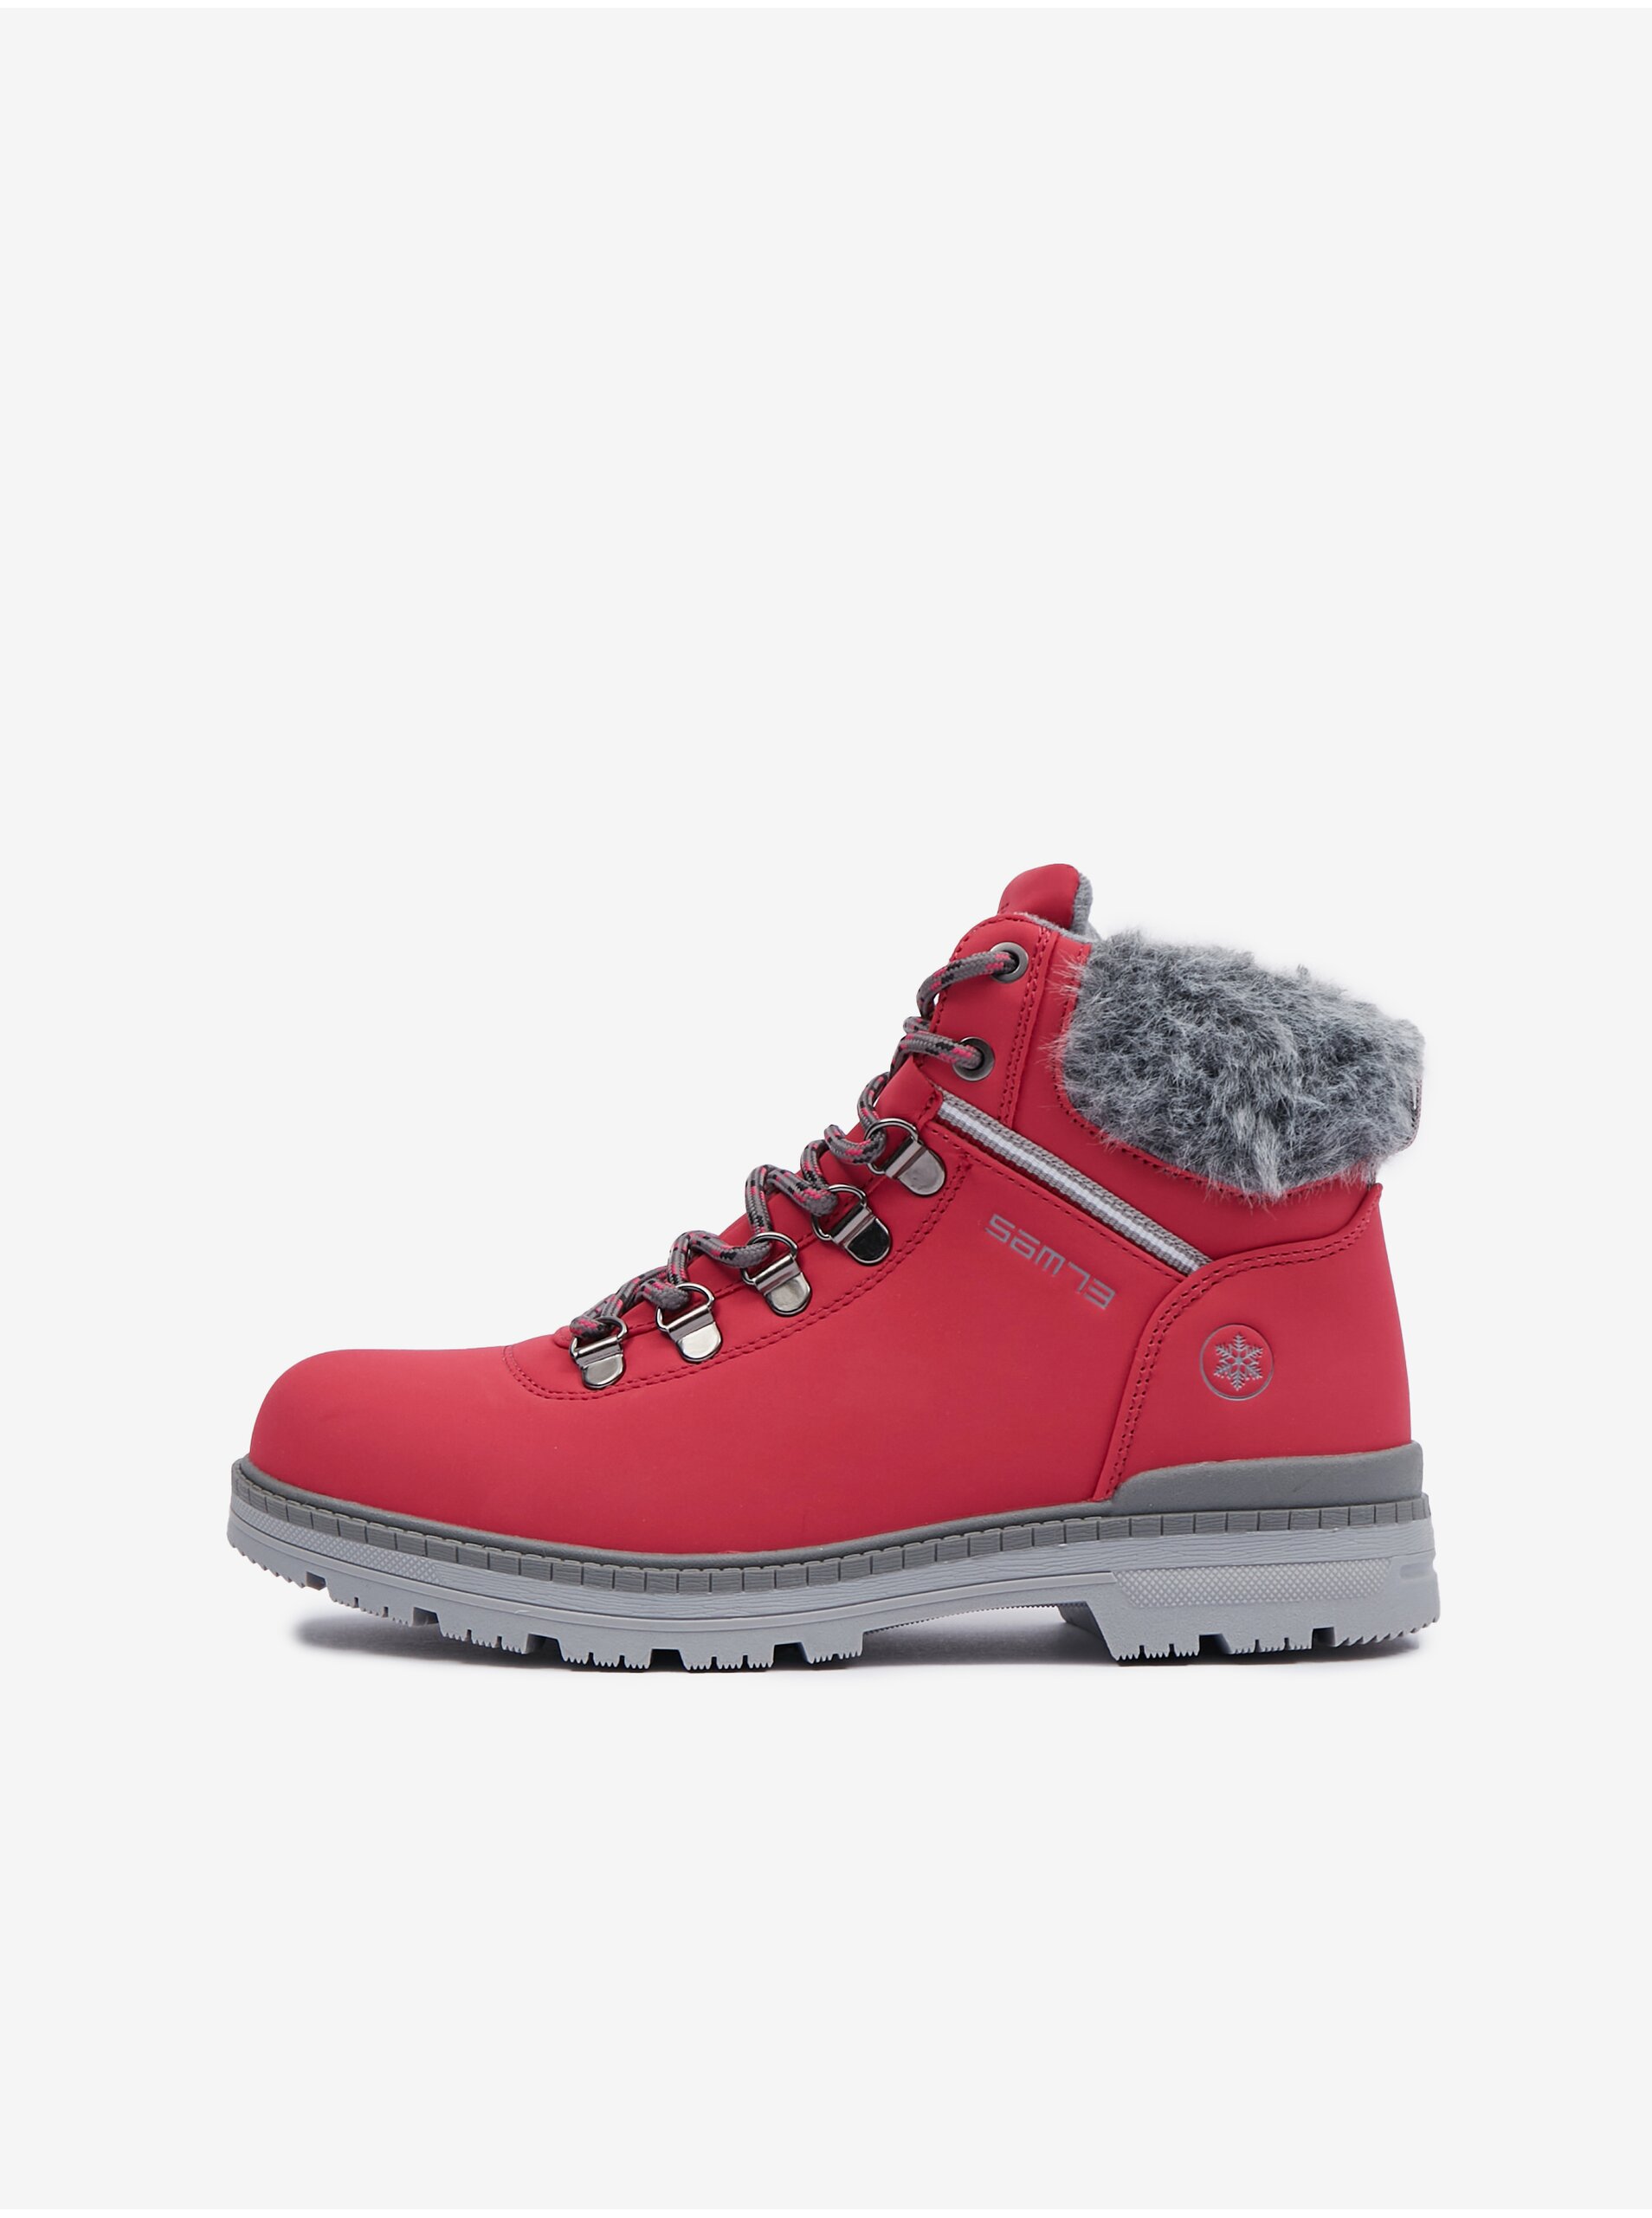 E-shop Růžové dámské zimní kotníkové boty SAM 73 Carina